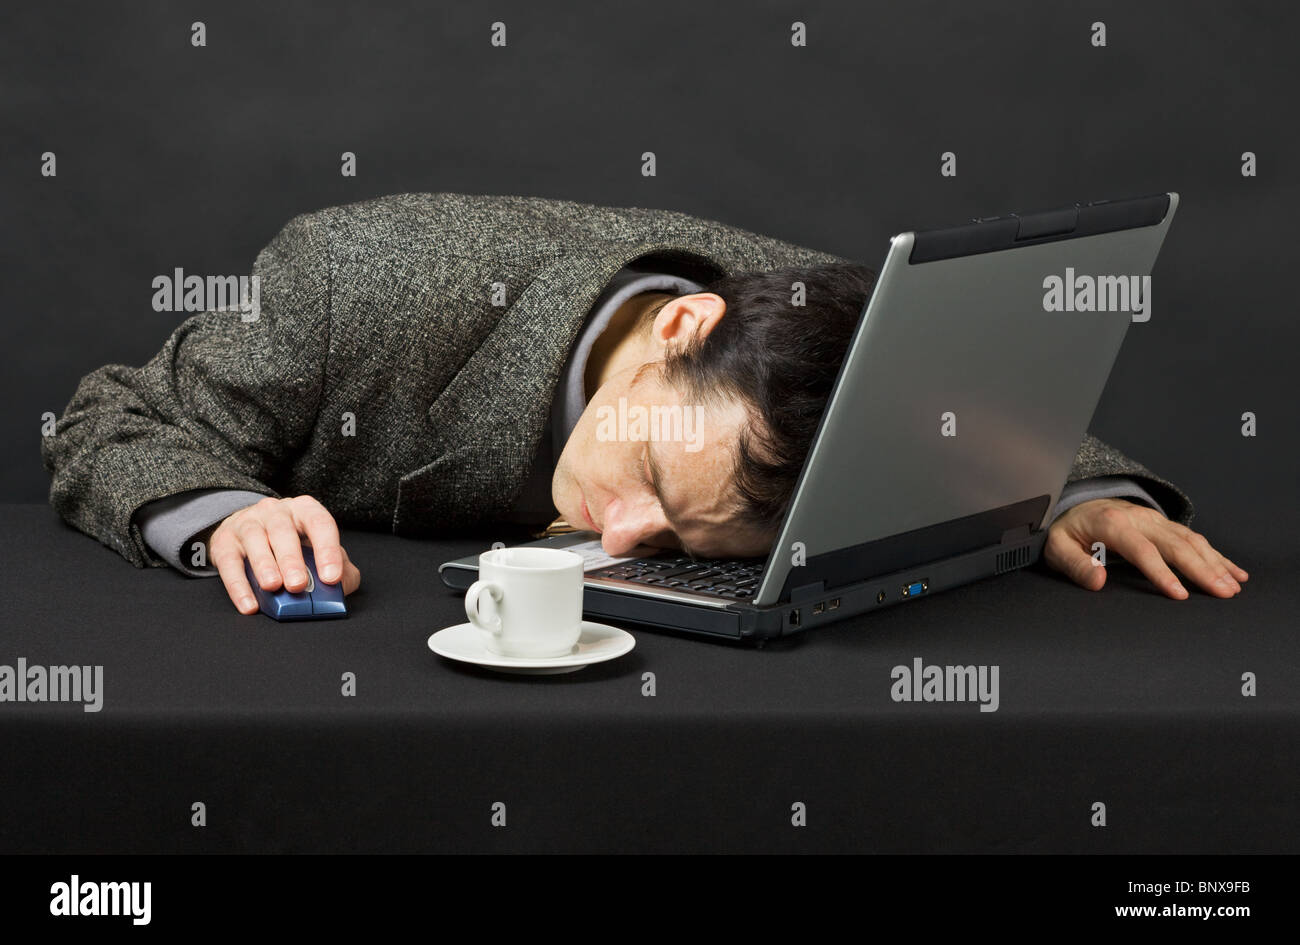 Устал компьютер. Человек перед компьютером. Заснул за компьютером. Спящий человек за компьютером.